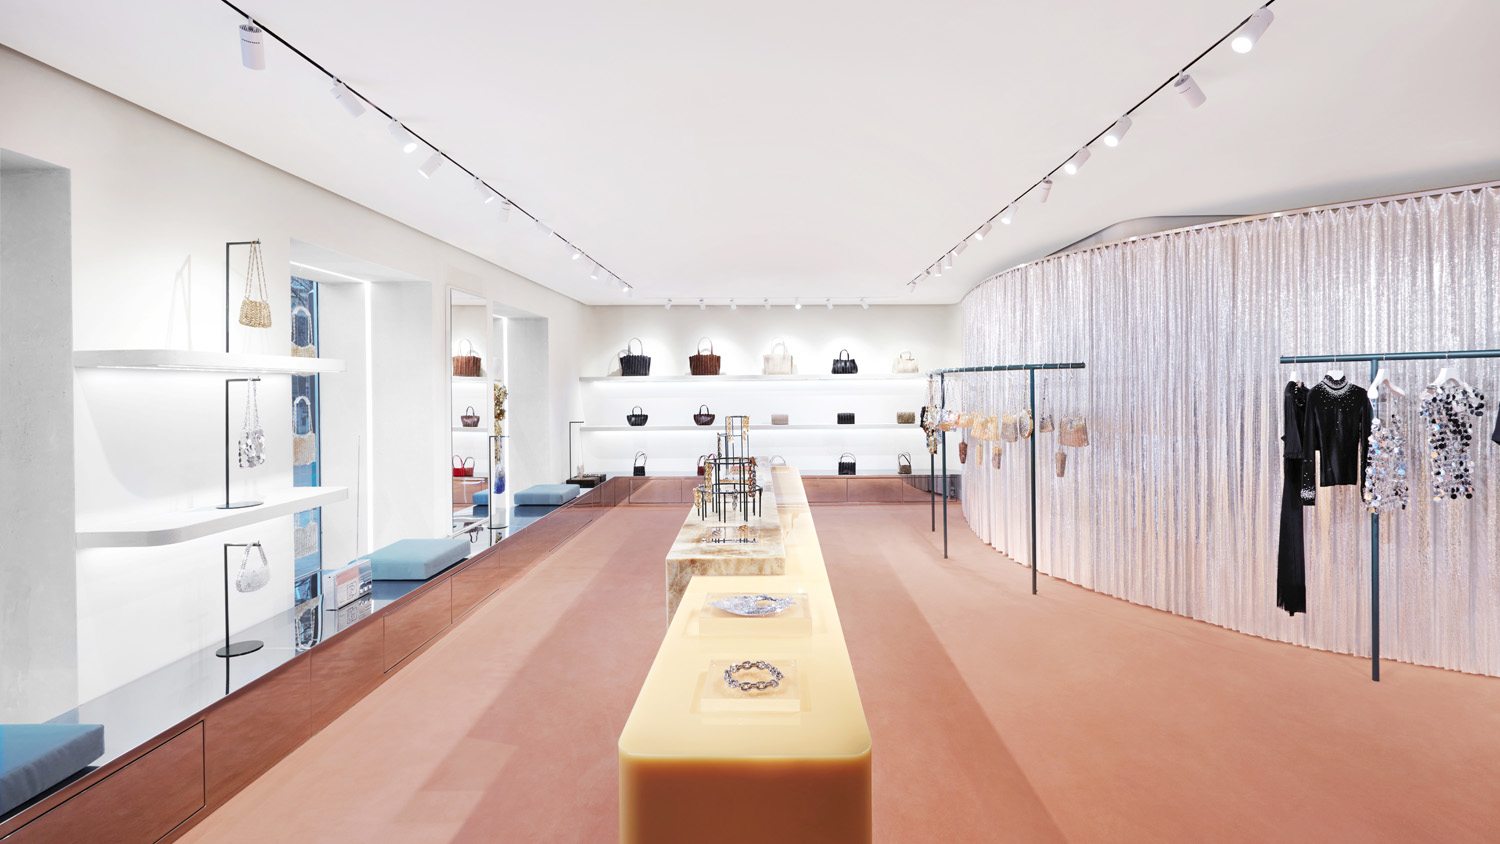 Paco Rabanne dévoile son univers rétro-futuriste dans sa nouvelle boutique de l'avenue Montaigne